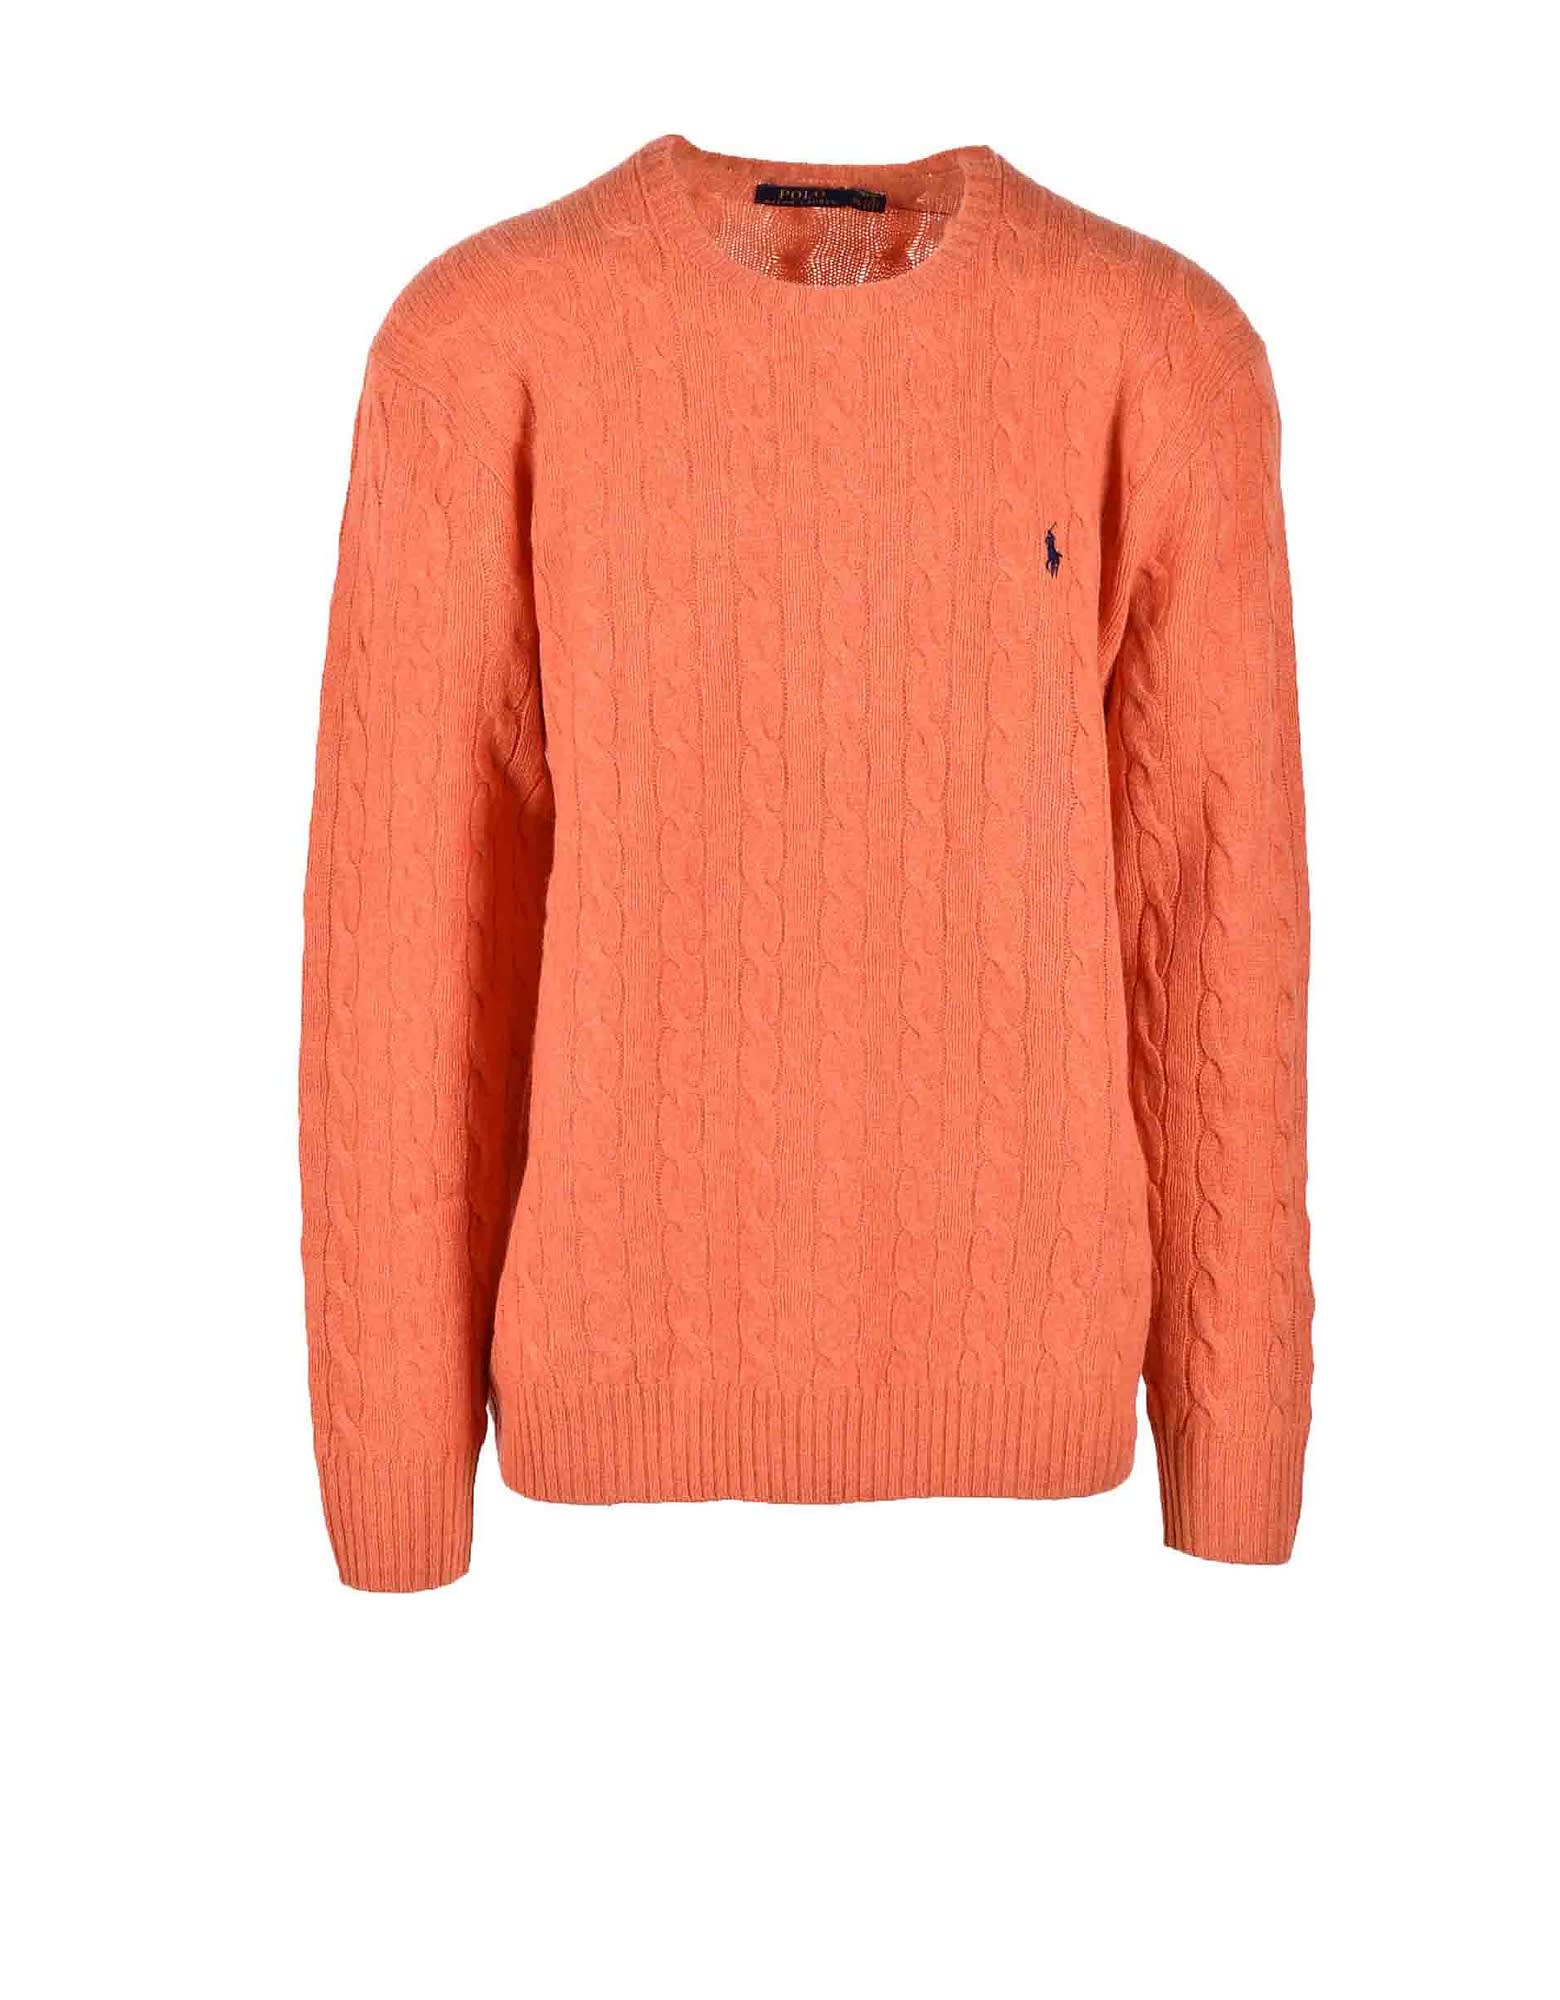 Ralph Lauren Mens Orange Sweater